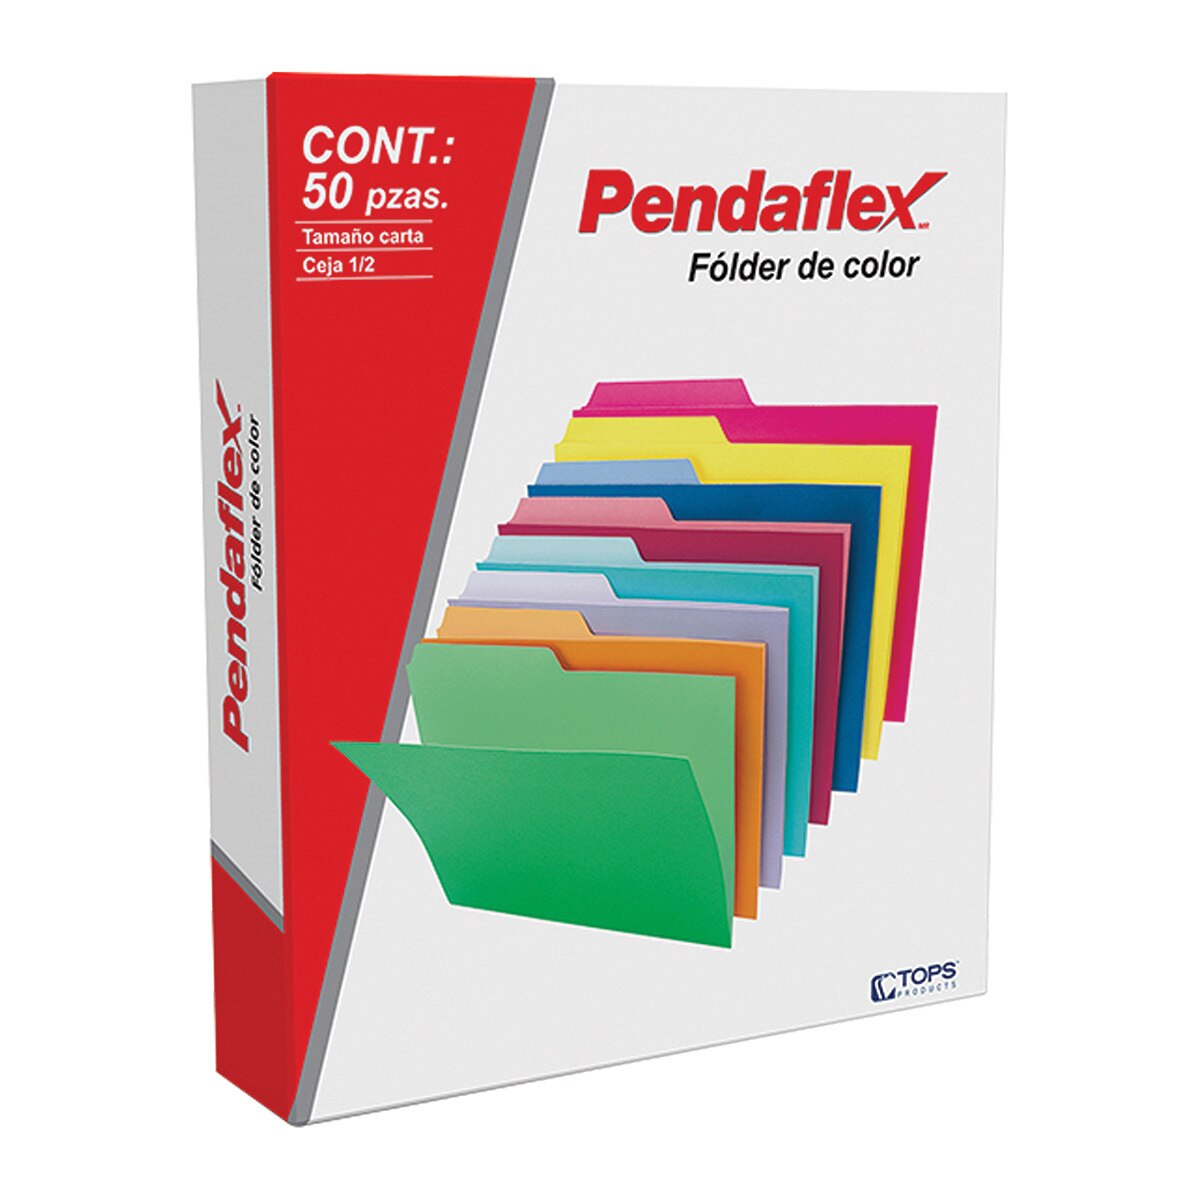 Pendaflex folders tamaño carta color gris